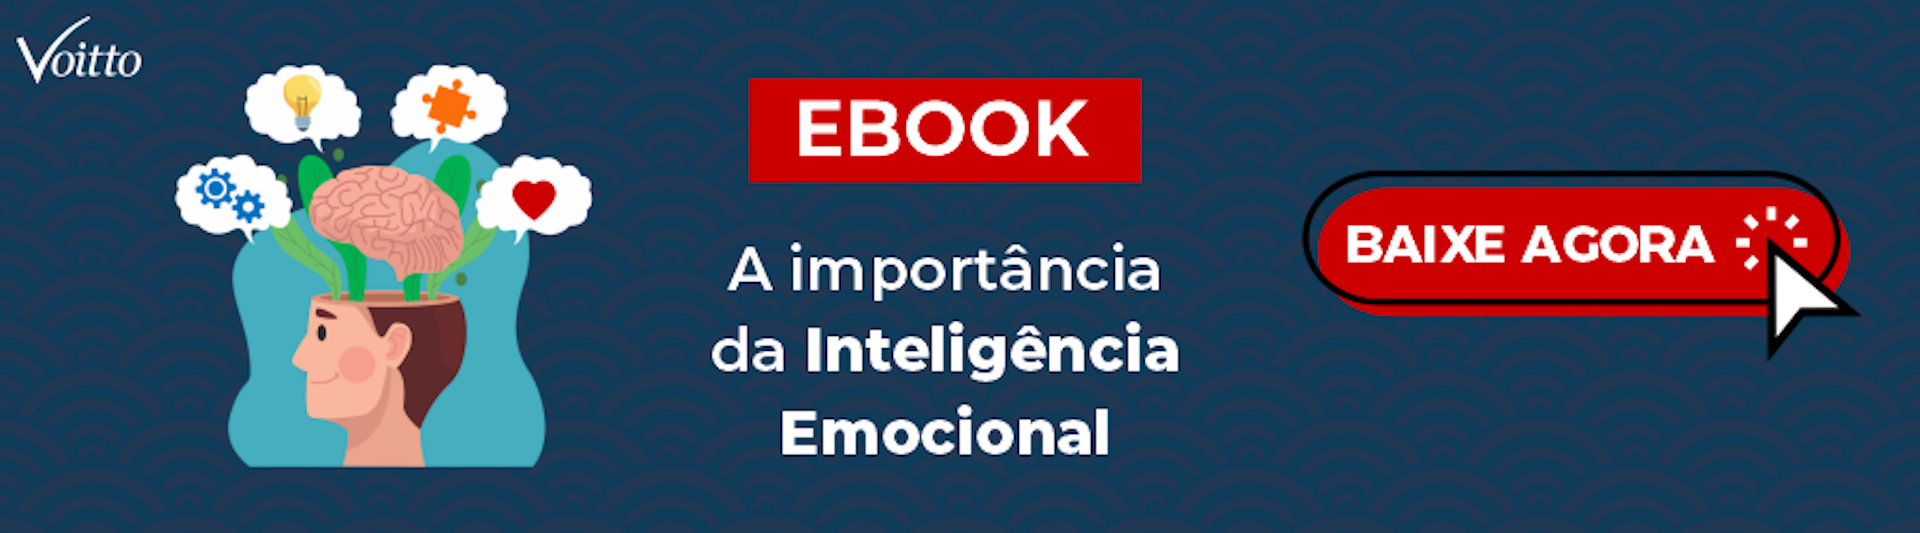 E-book A importância da Inteligência Emocional